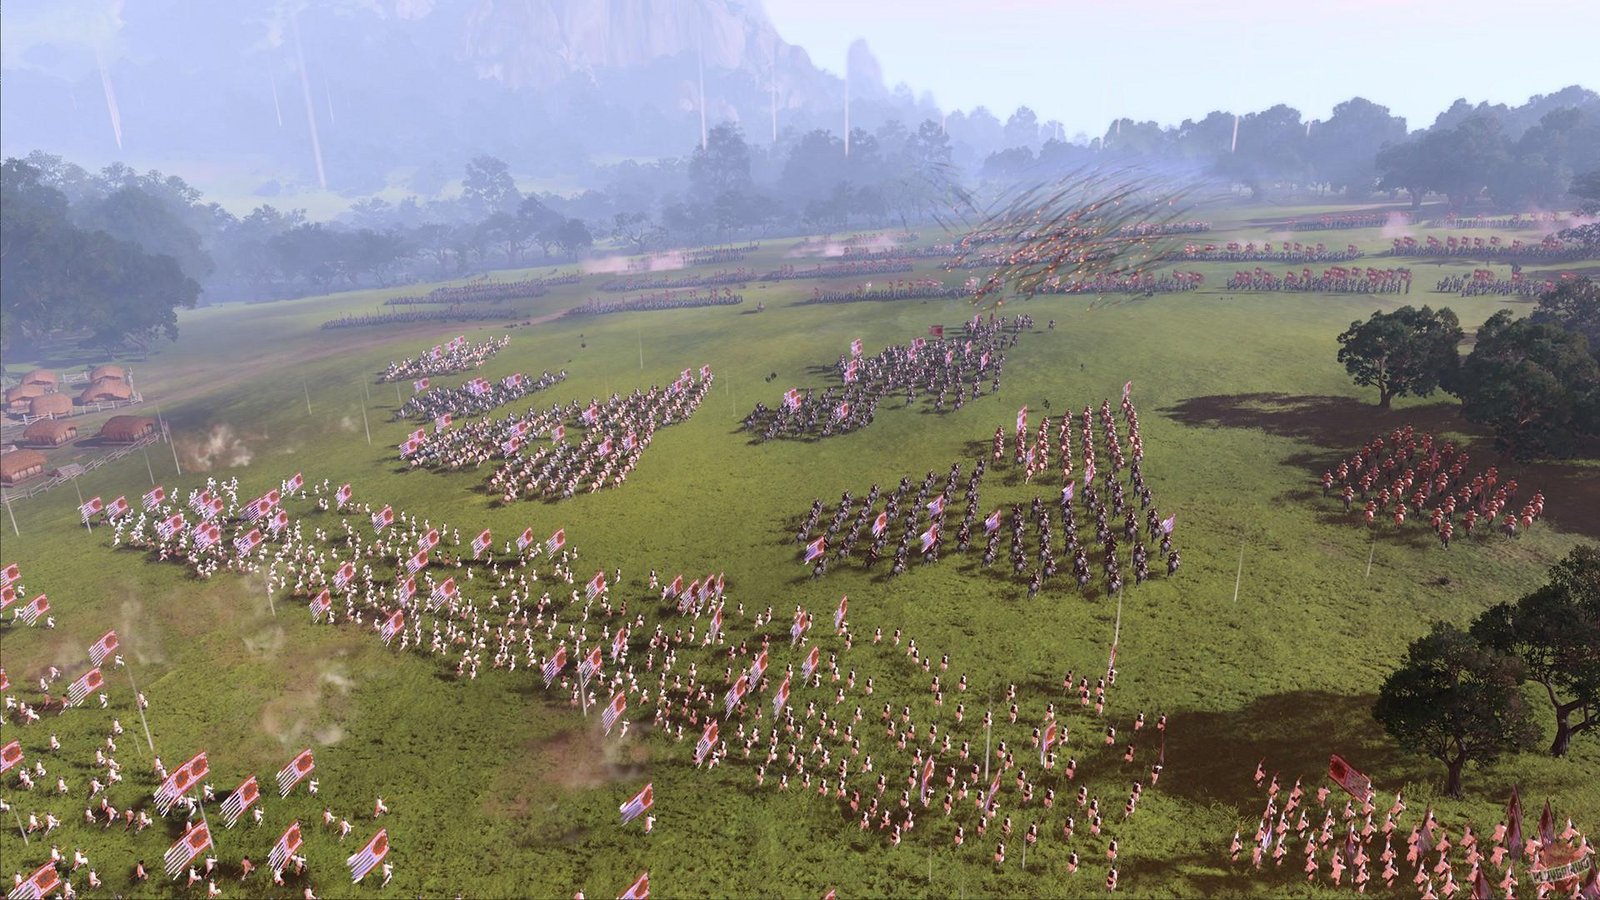 Total War: Three Kingdoms - Fates Divided